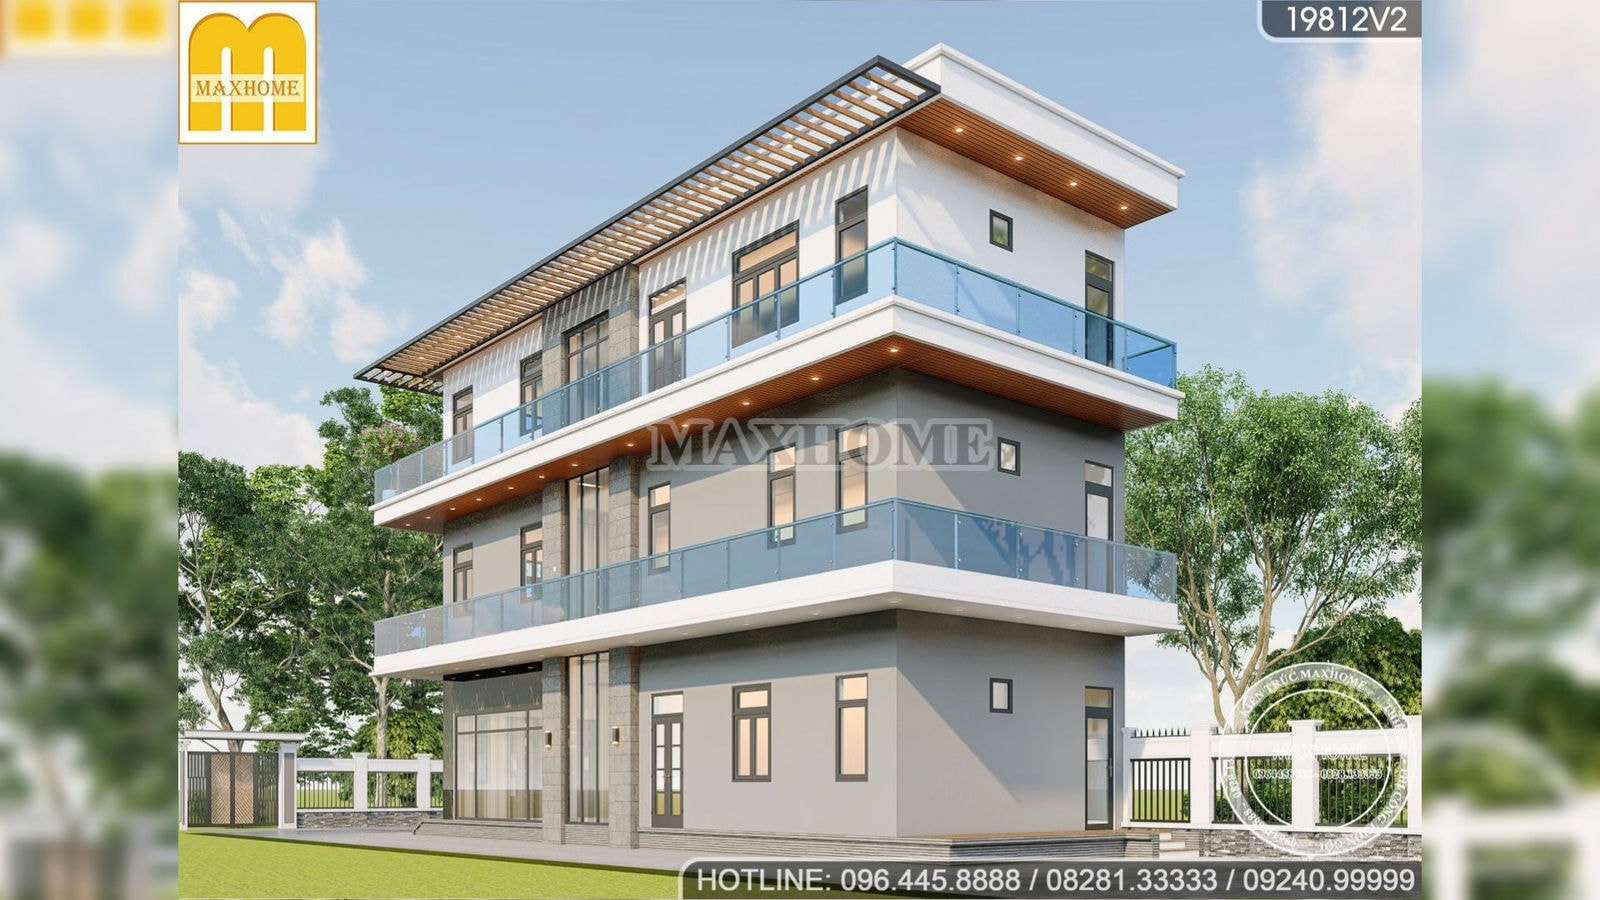 Maxhome thiết kế mẫu nhà phố 3 tầng hiện đại ĐẸP và KINH TẾ nhất 2023 I MH01753